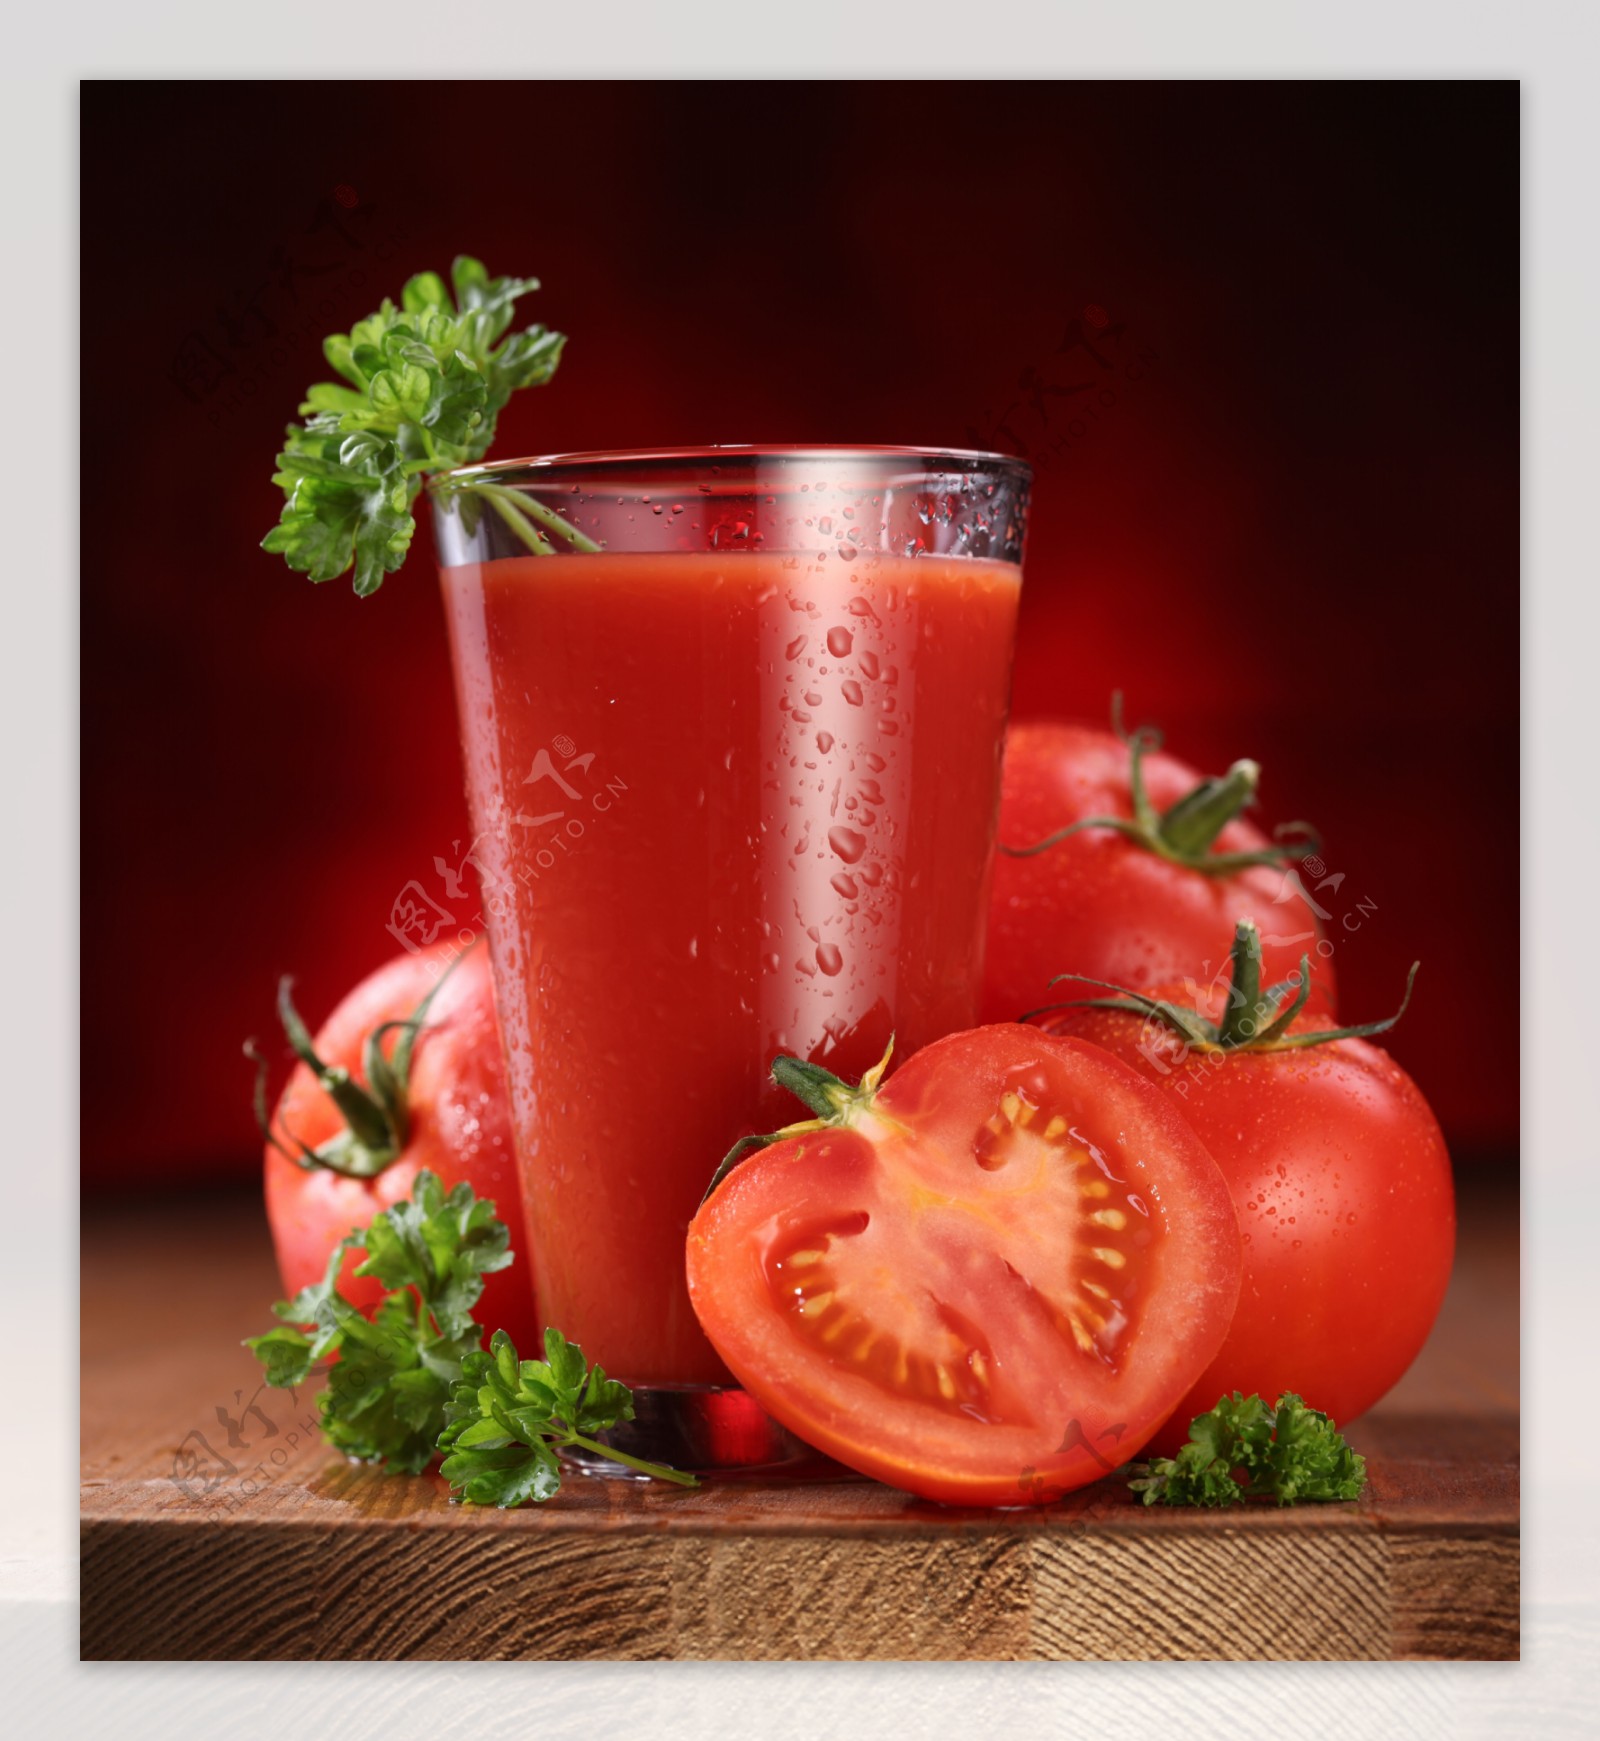 西红柿苹果汁,西红柿苹果汁的家常做法 - 美食杰西红柿苹果汁做法大全